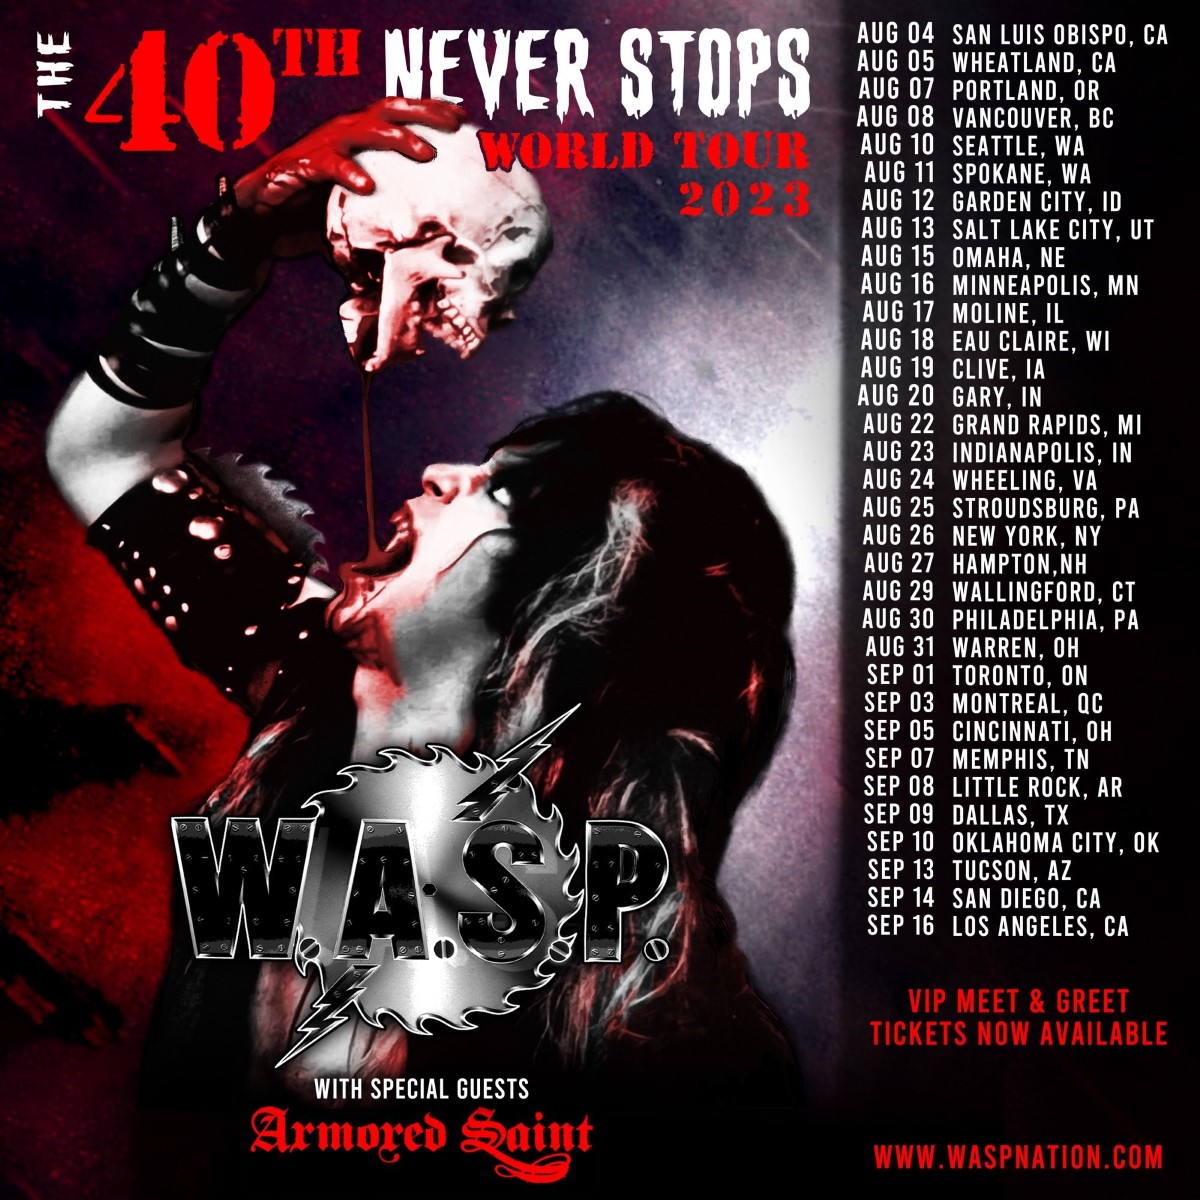 W.A.S.P. Announces 33 More U.S. Tour Dates